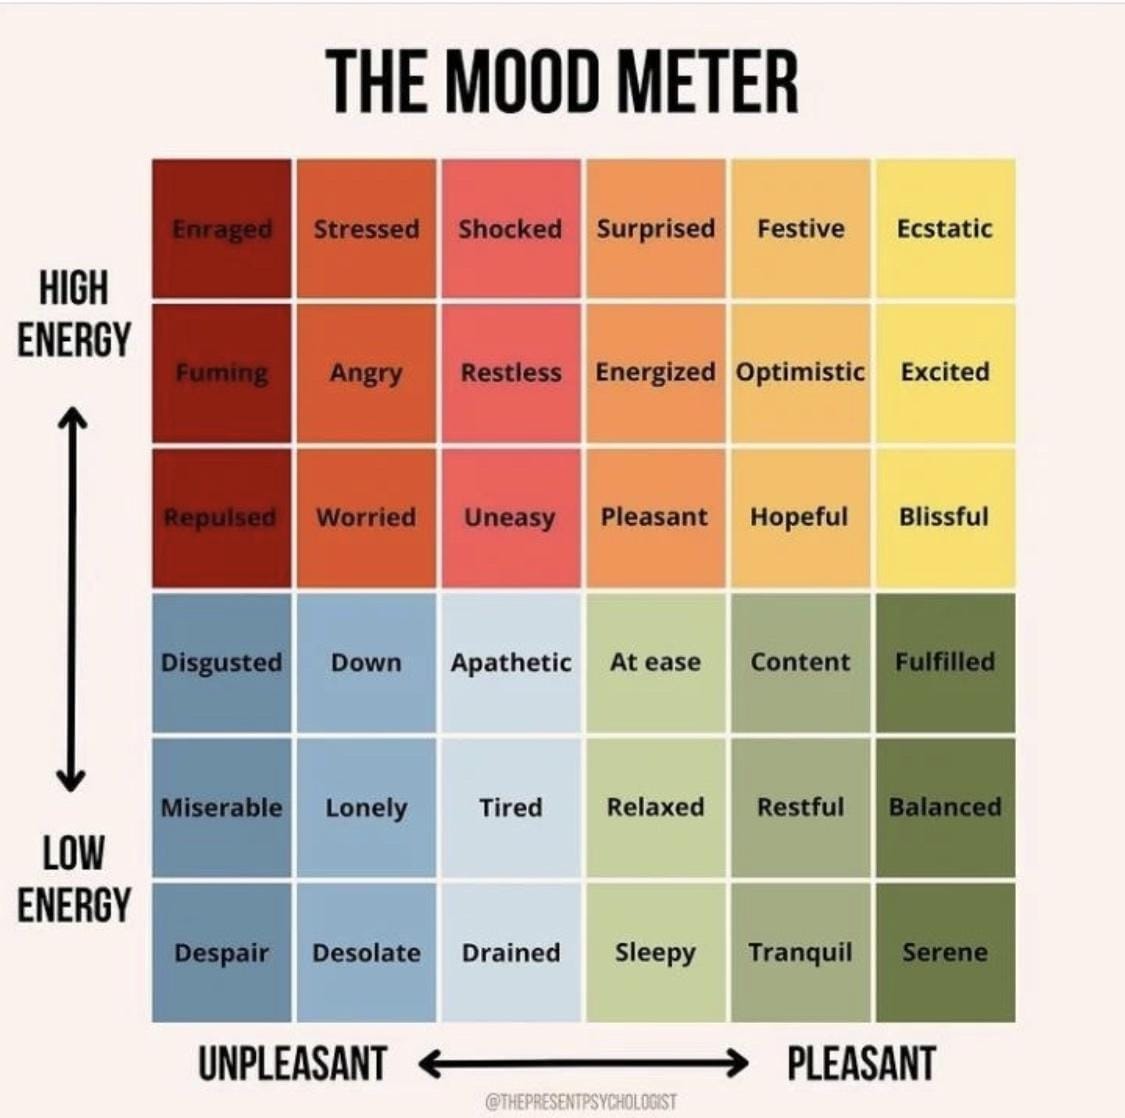 The mood meter